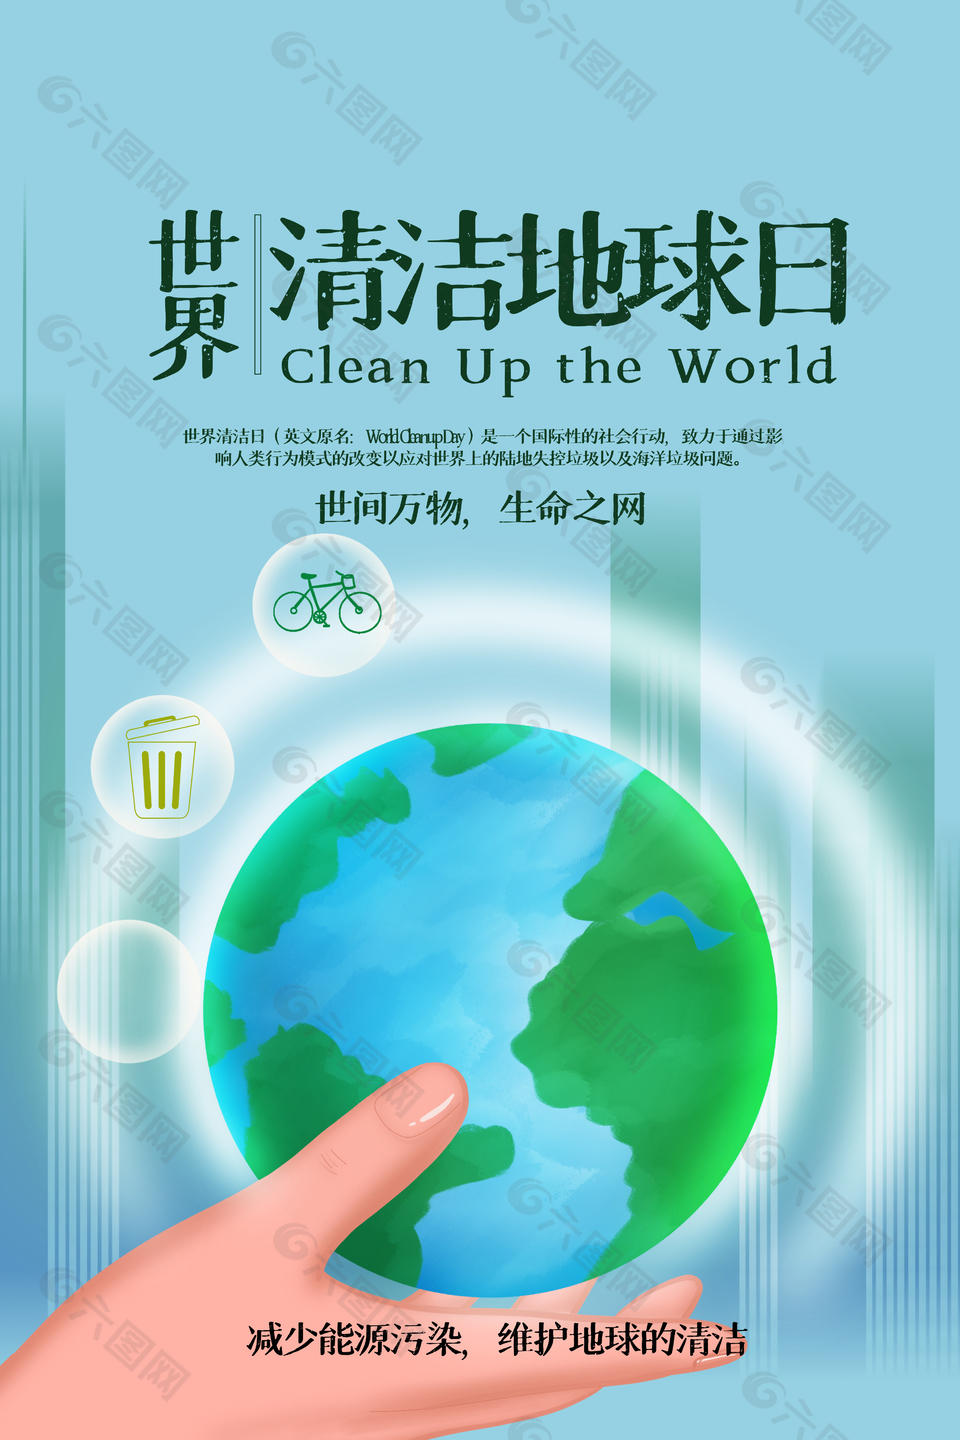 世间万物生命之网清洁地球日主题海报